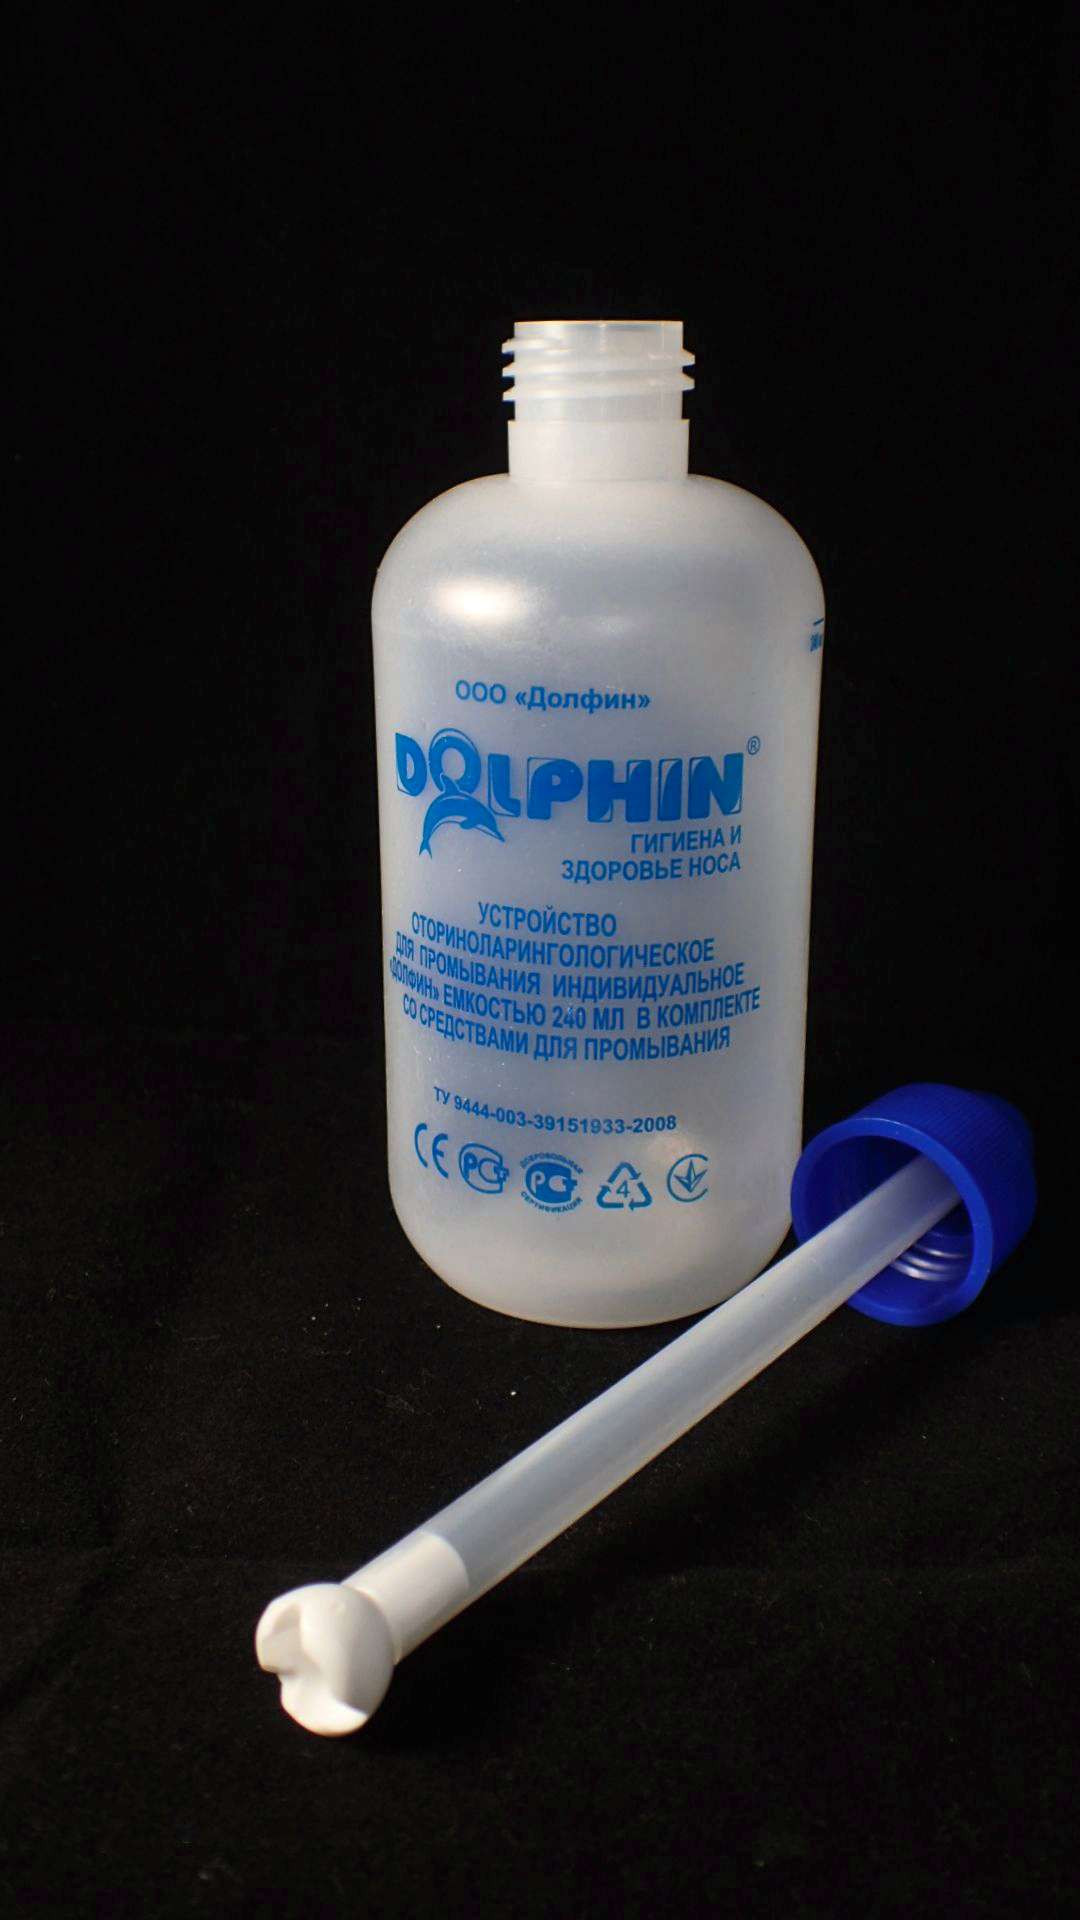 Долфин средство для промывания инструкция. Долфин 240 мл и средство для промывания. Капли для промывания носа Долфин. Бутылка для промывания носа Долфин. Долфин емкость для промывания.